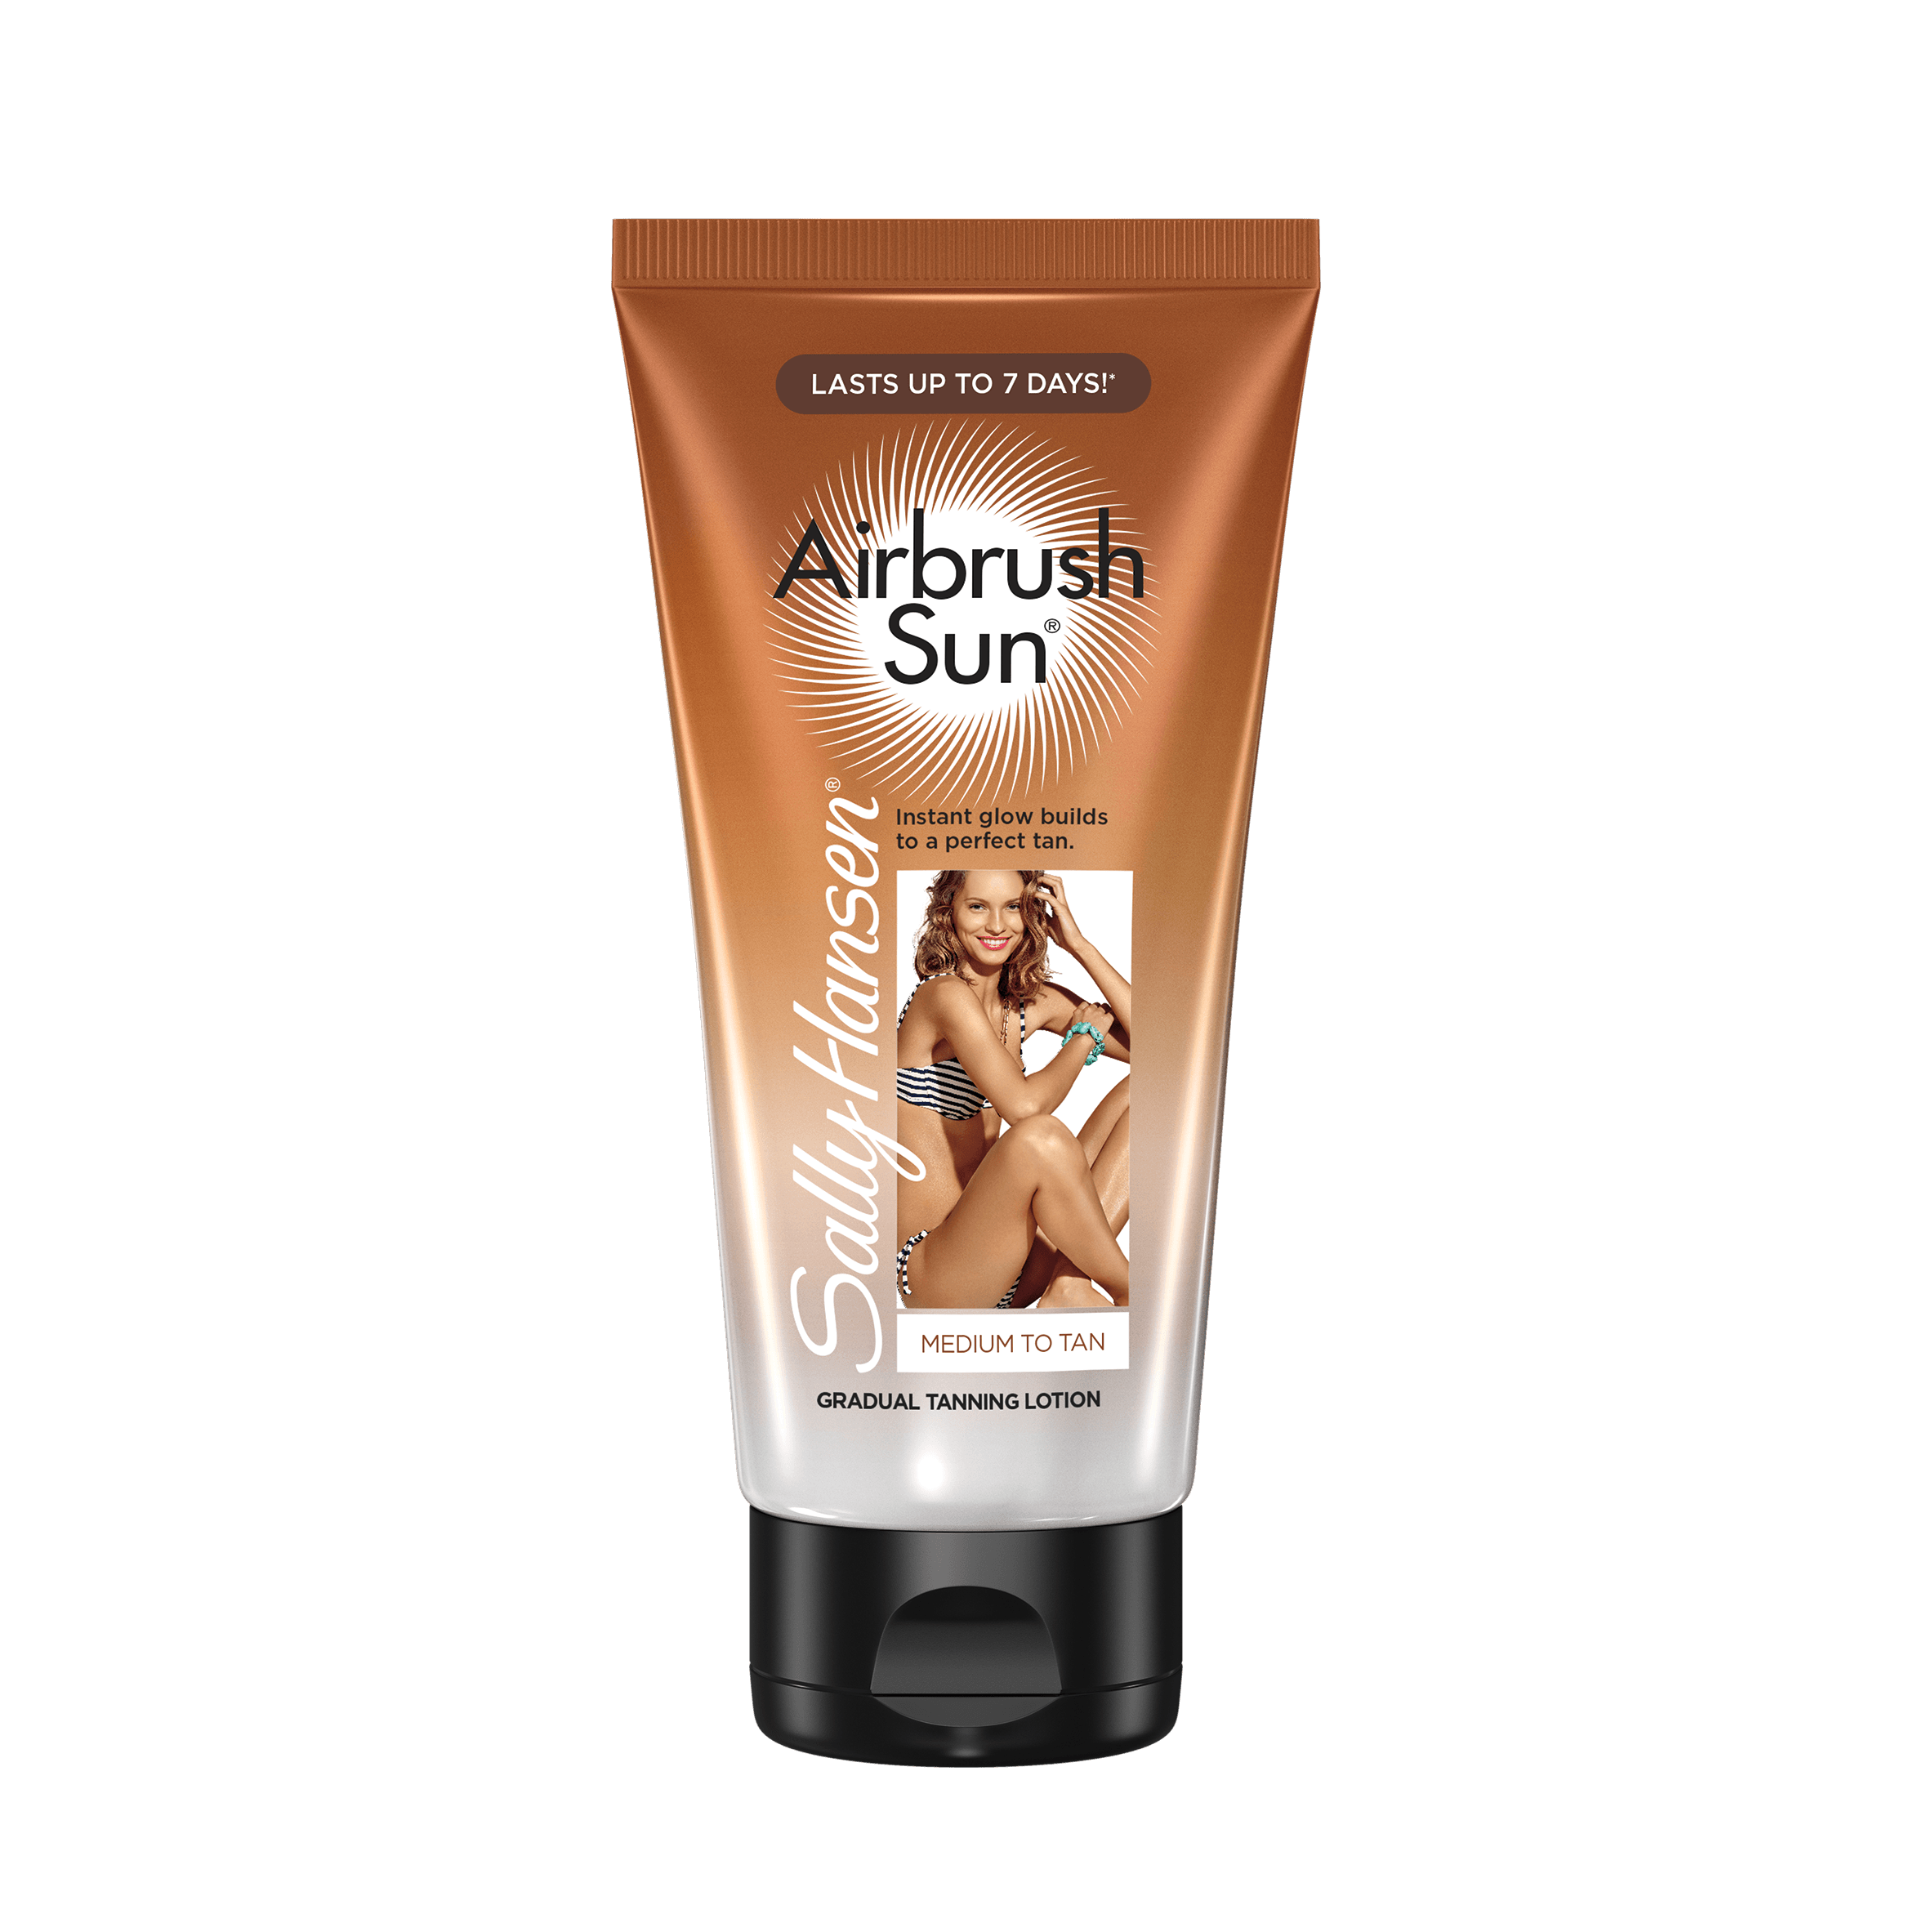 Sally Hansen Airbrush Sun Gradual Tanning Lotion, Medium to Tan, 6 oz - image 1 of 3